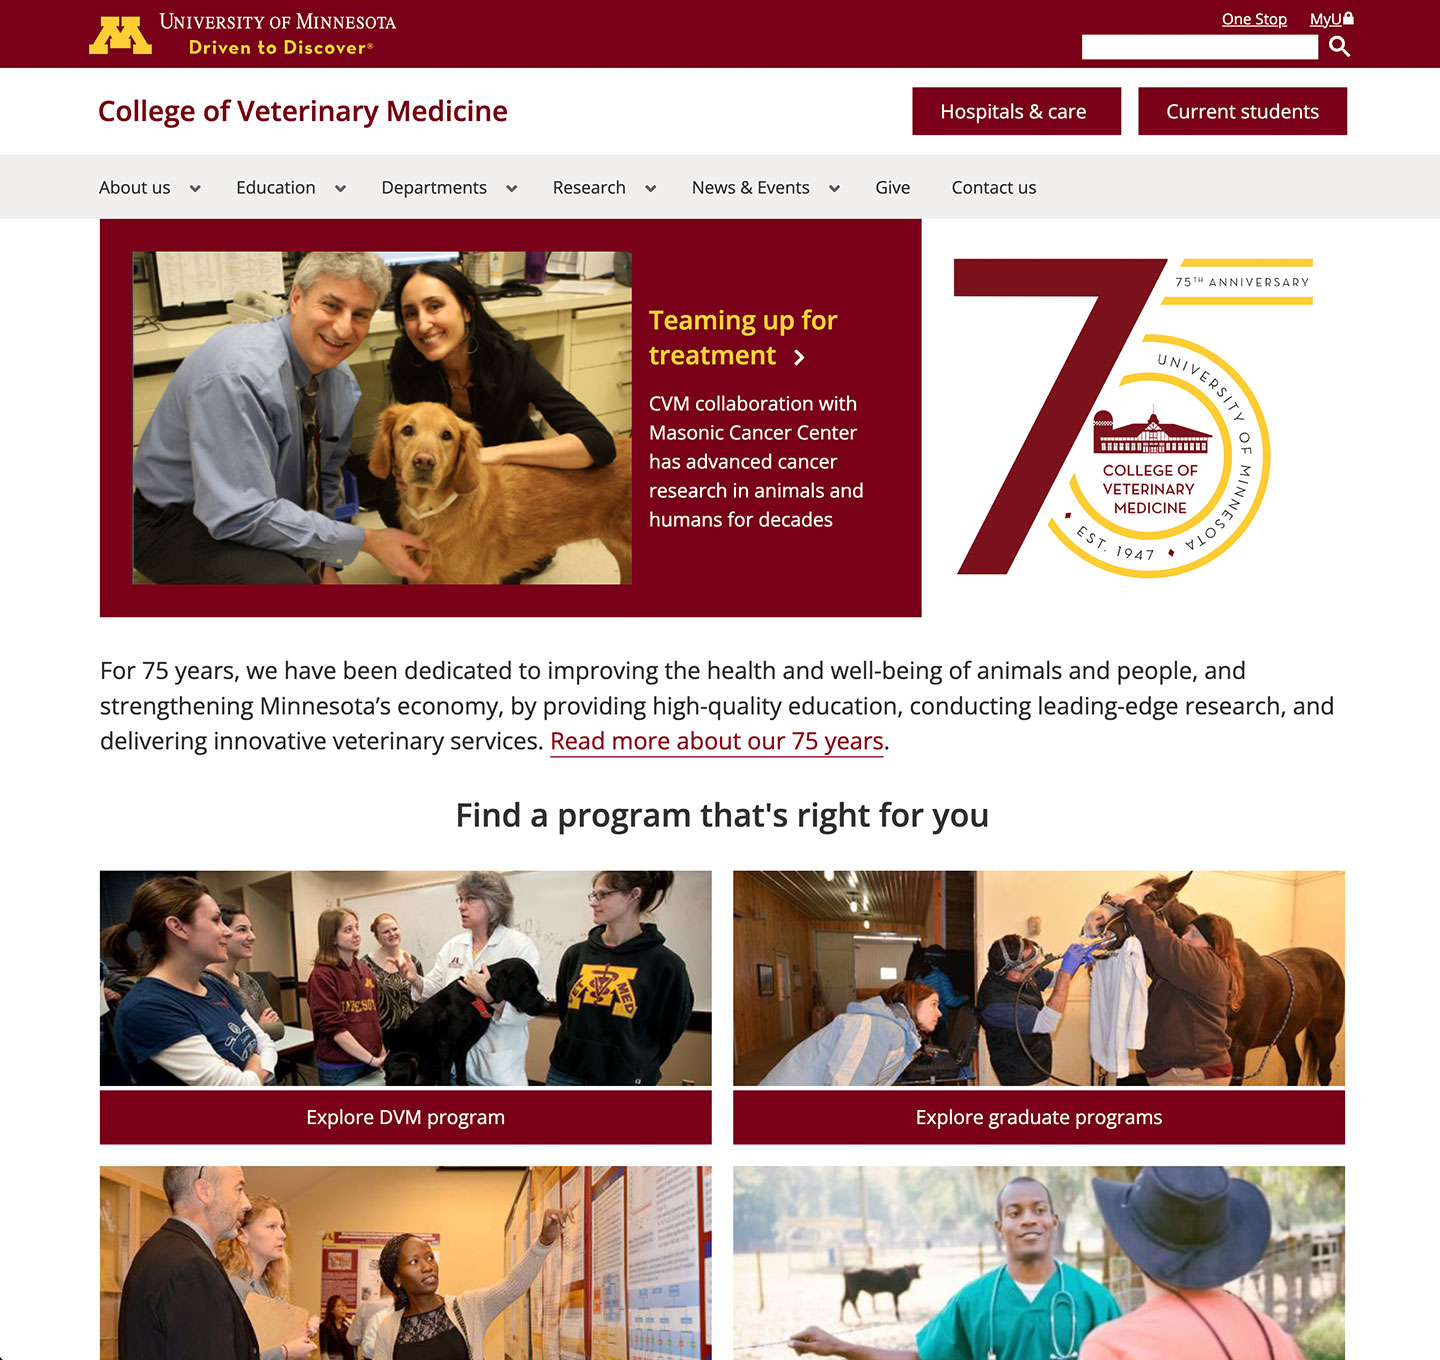 College of Veterinary Medicine website